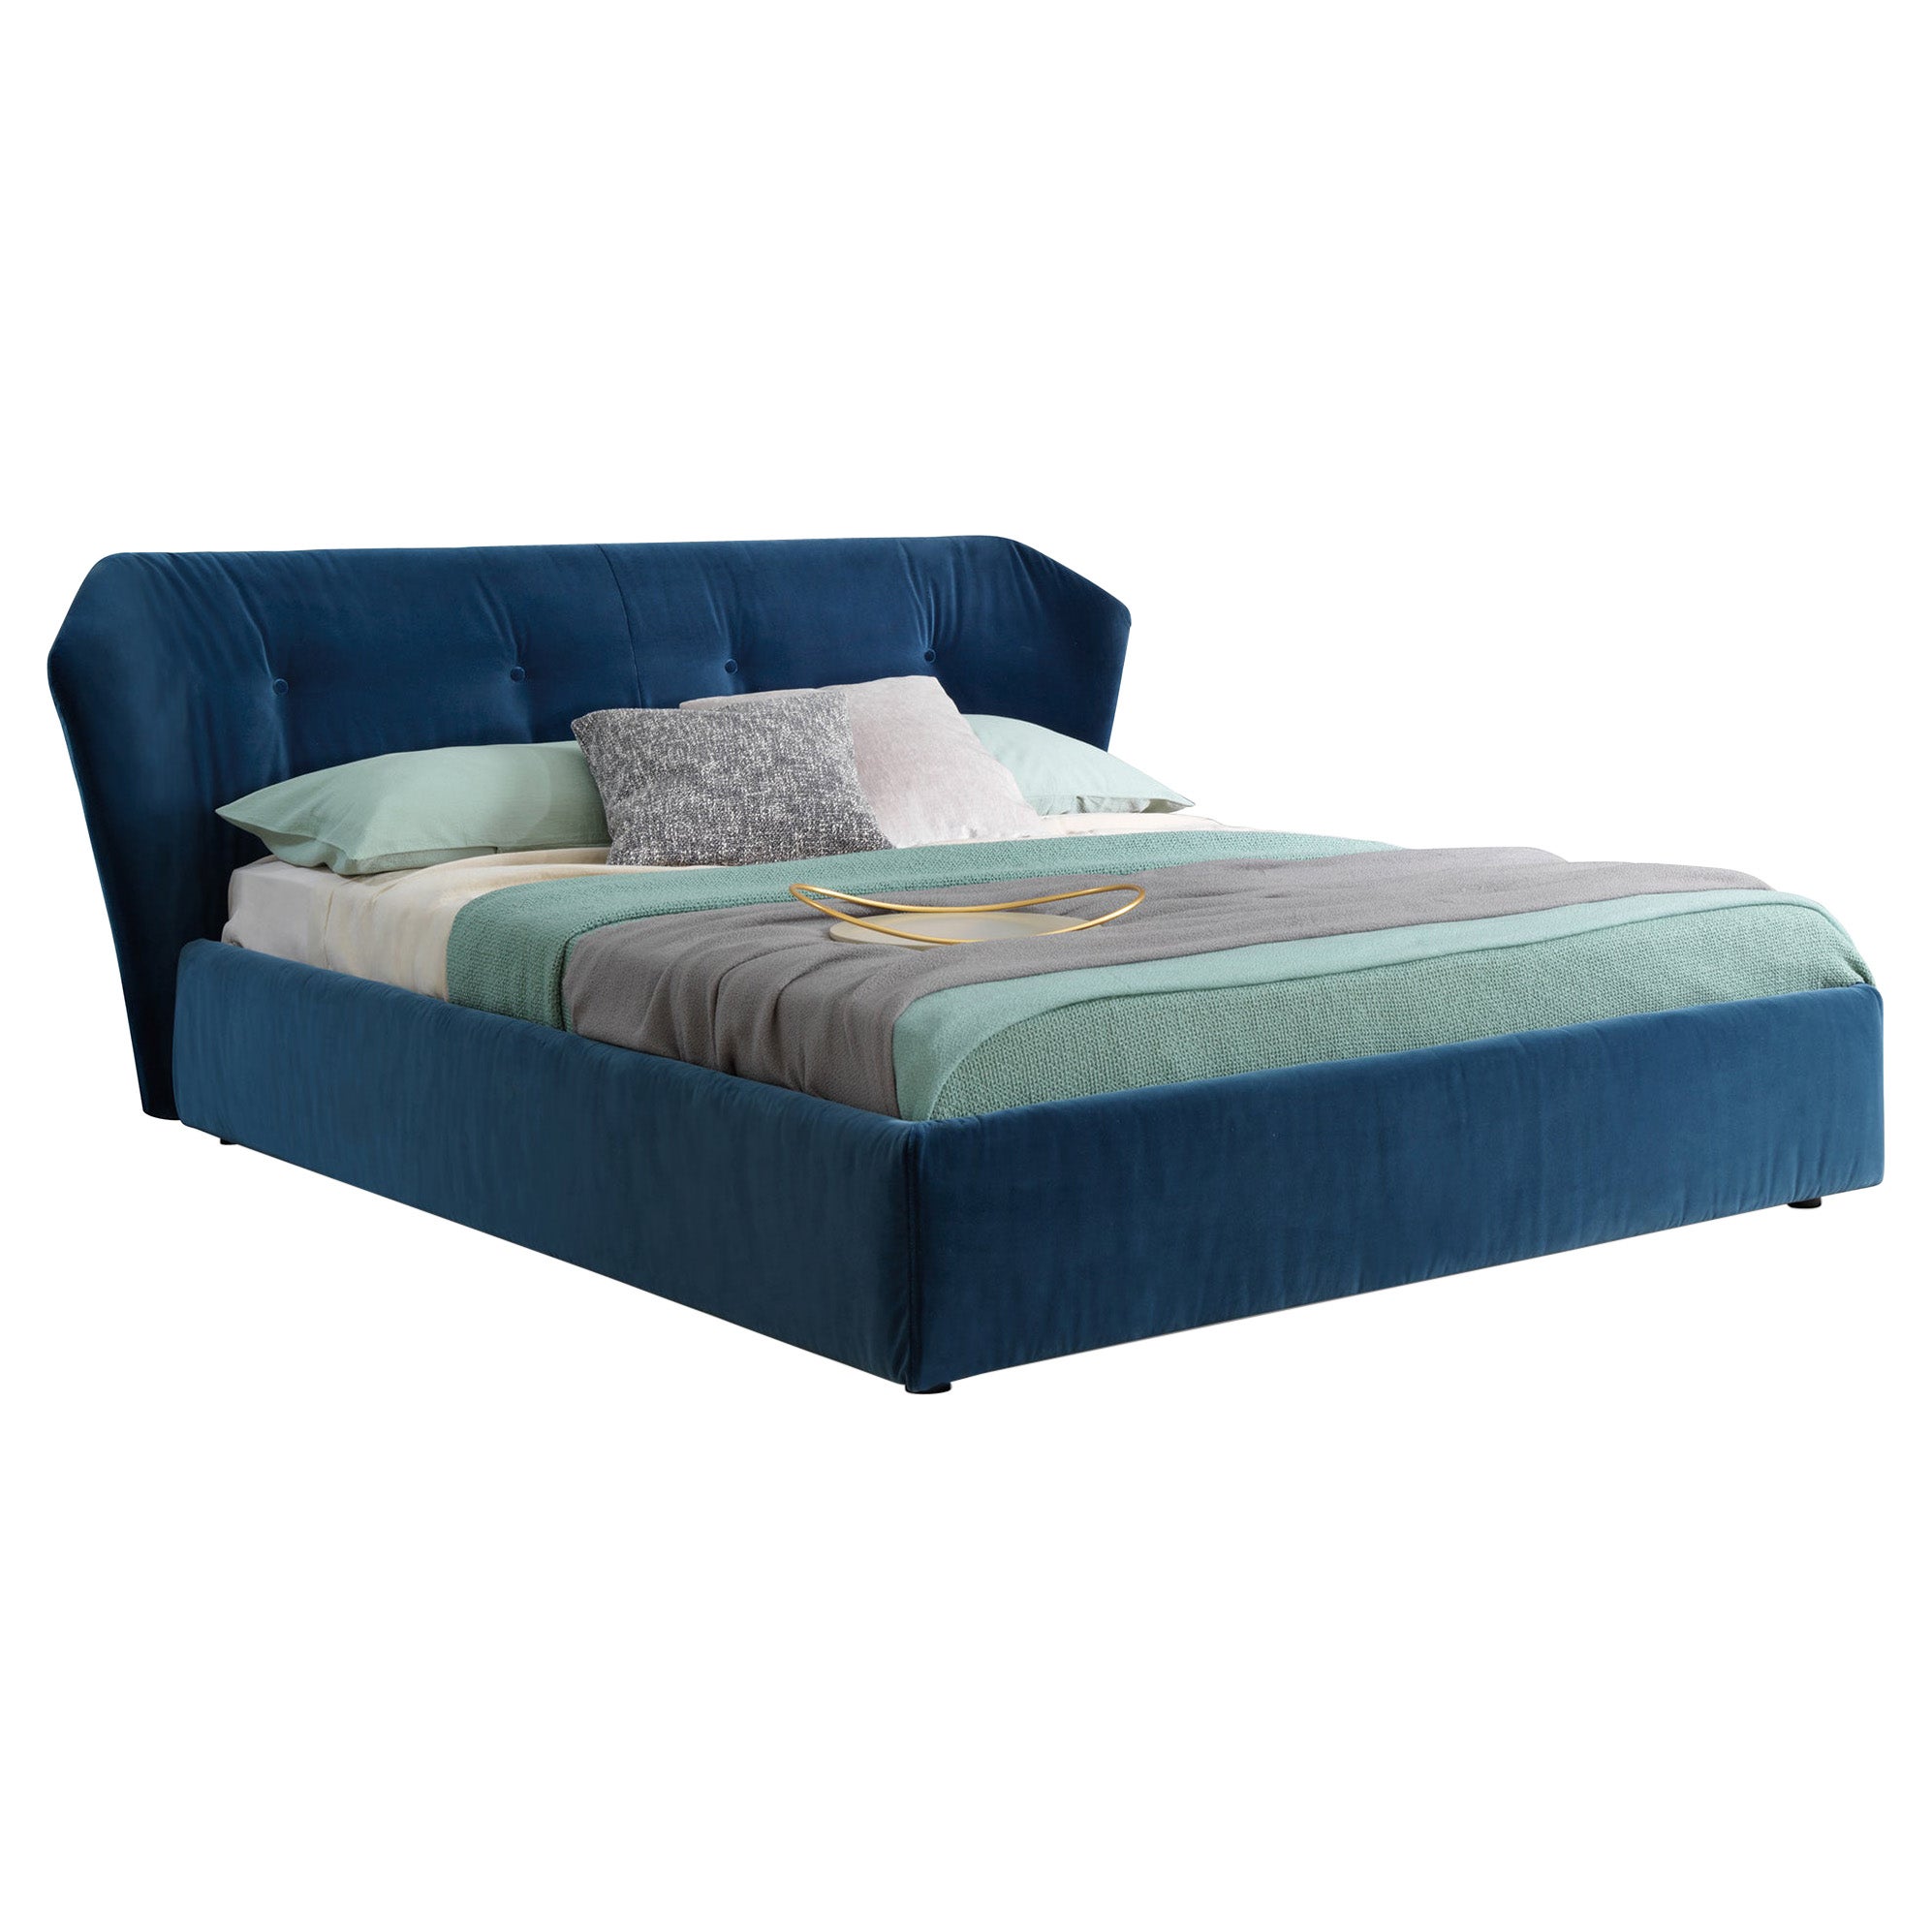 New York Box Bed Queen Size in Vegas Velvet Dark Blue Upholstery, Sergio Bicego For Sale